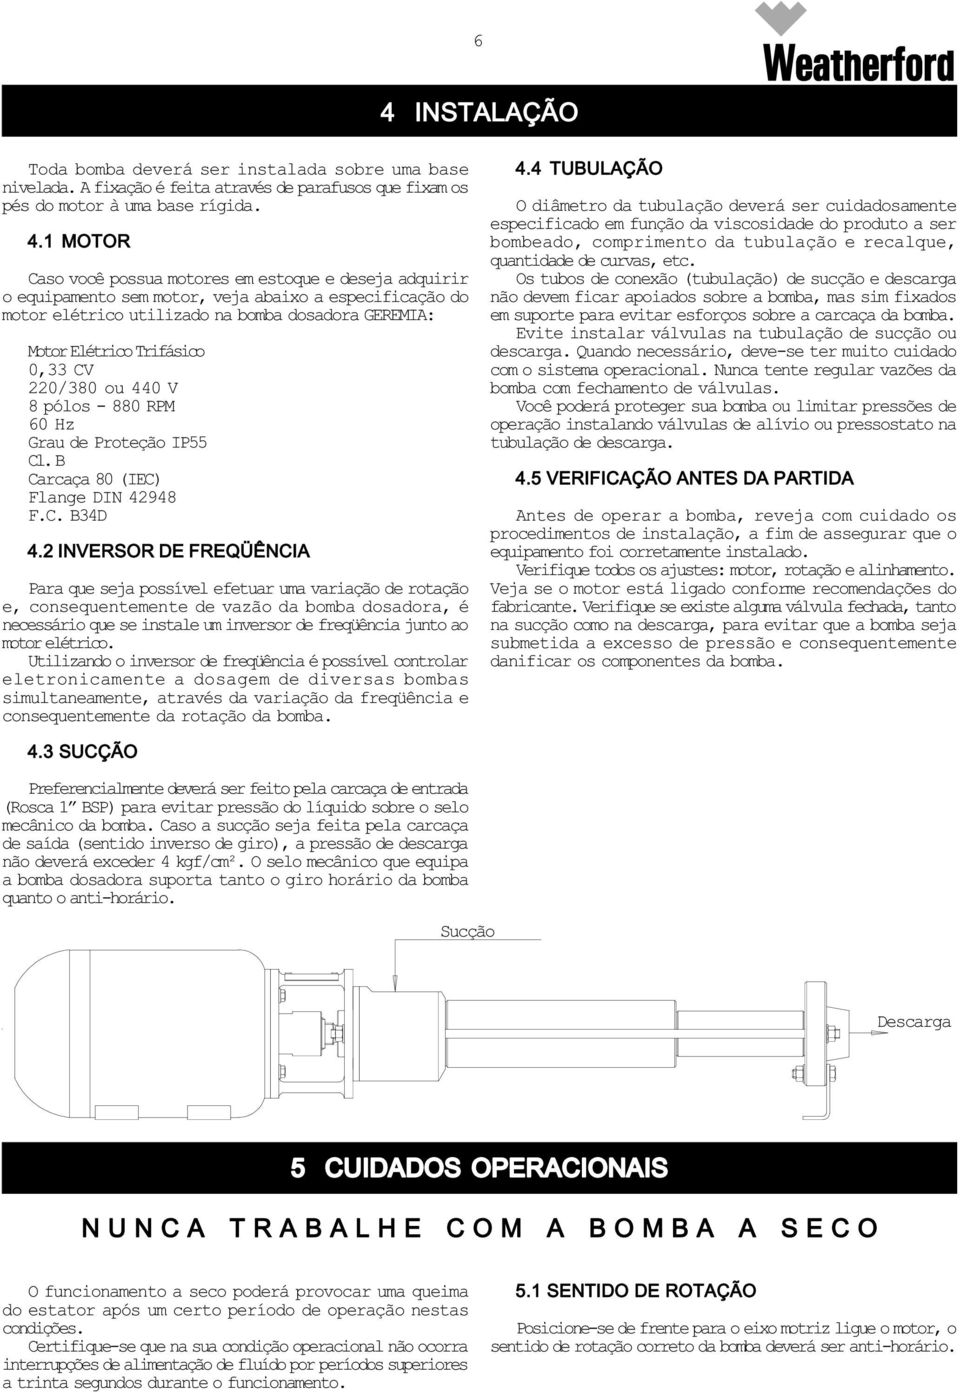 RPM 60 Hz Grau de Proteção IP55 Cl.B Carcaça 80 (IEC) Flange DIN 42948 F.C. B34D 4.